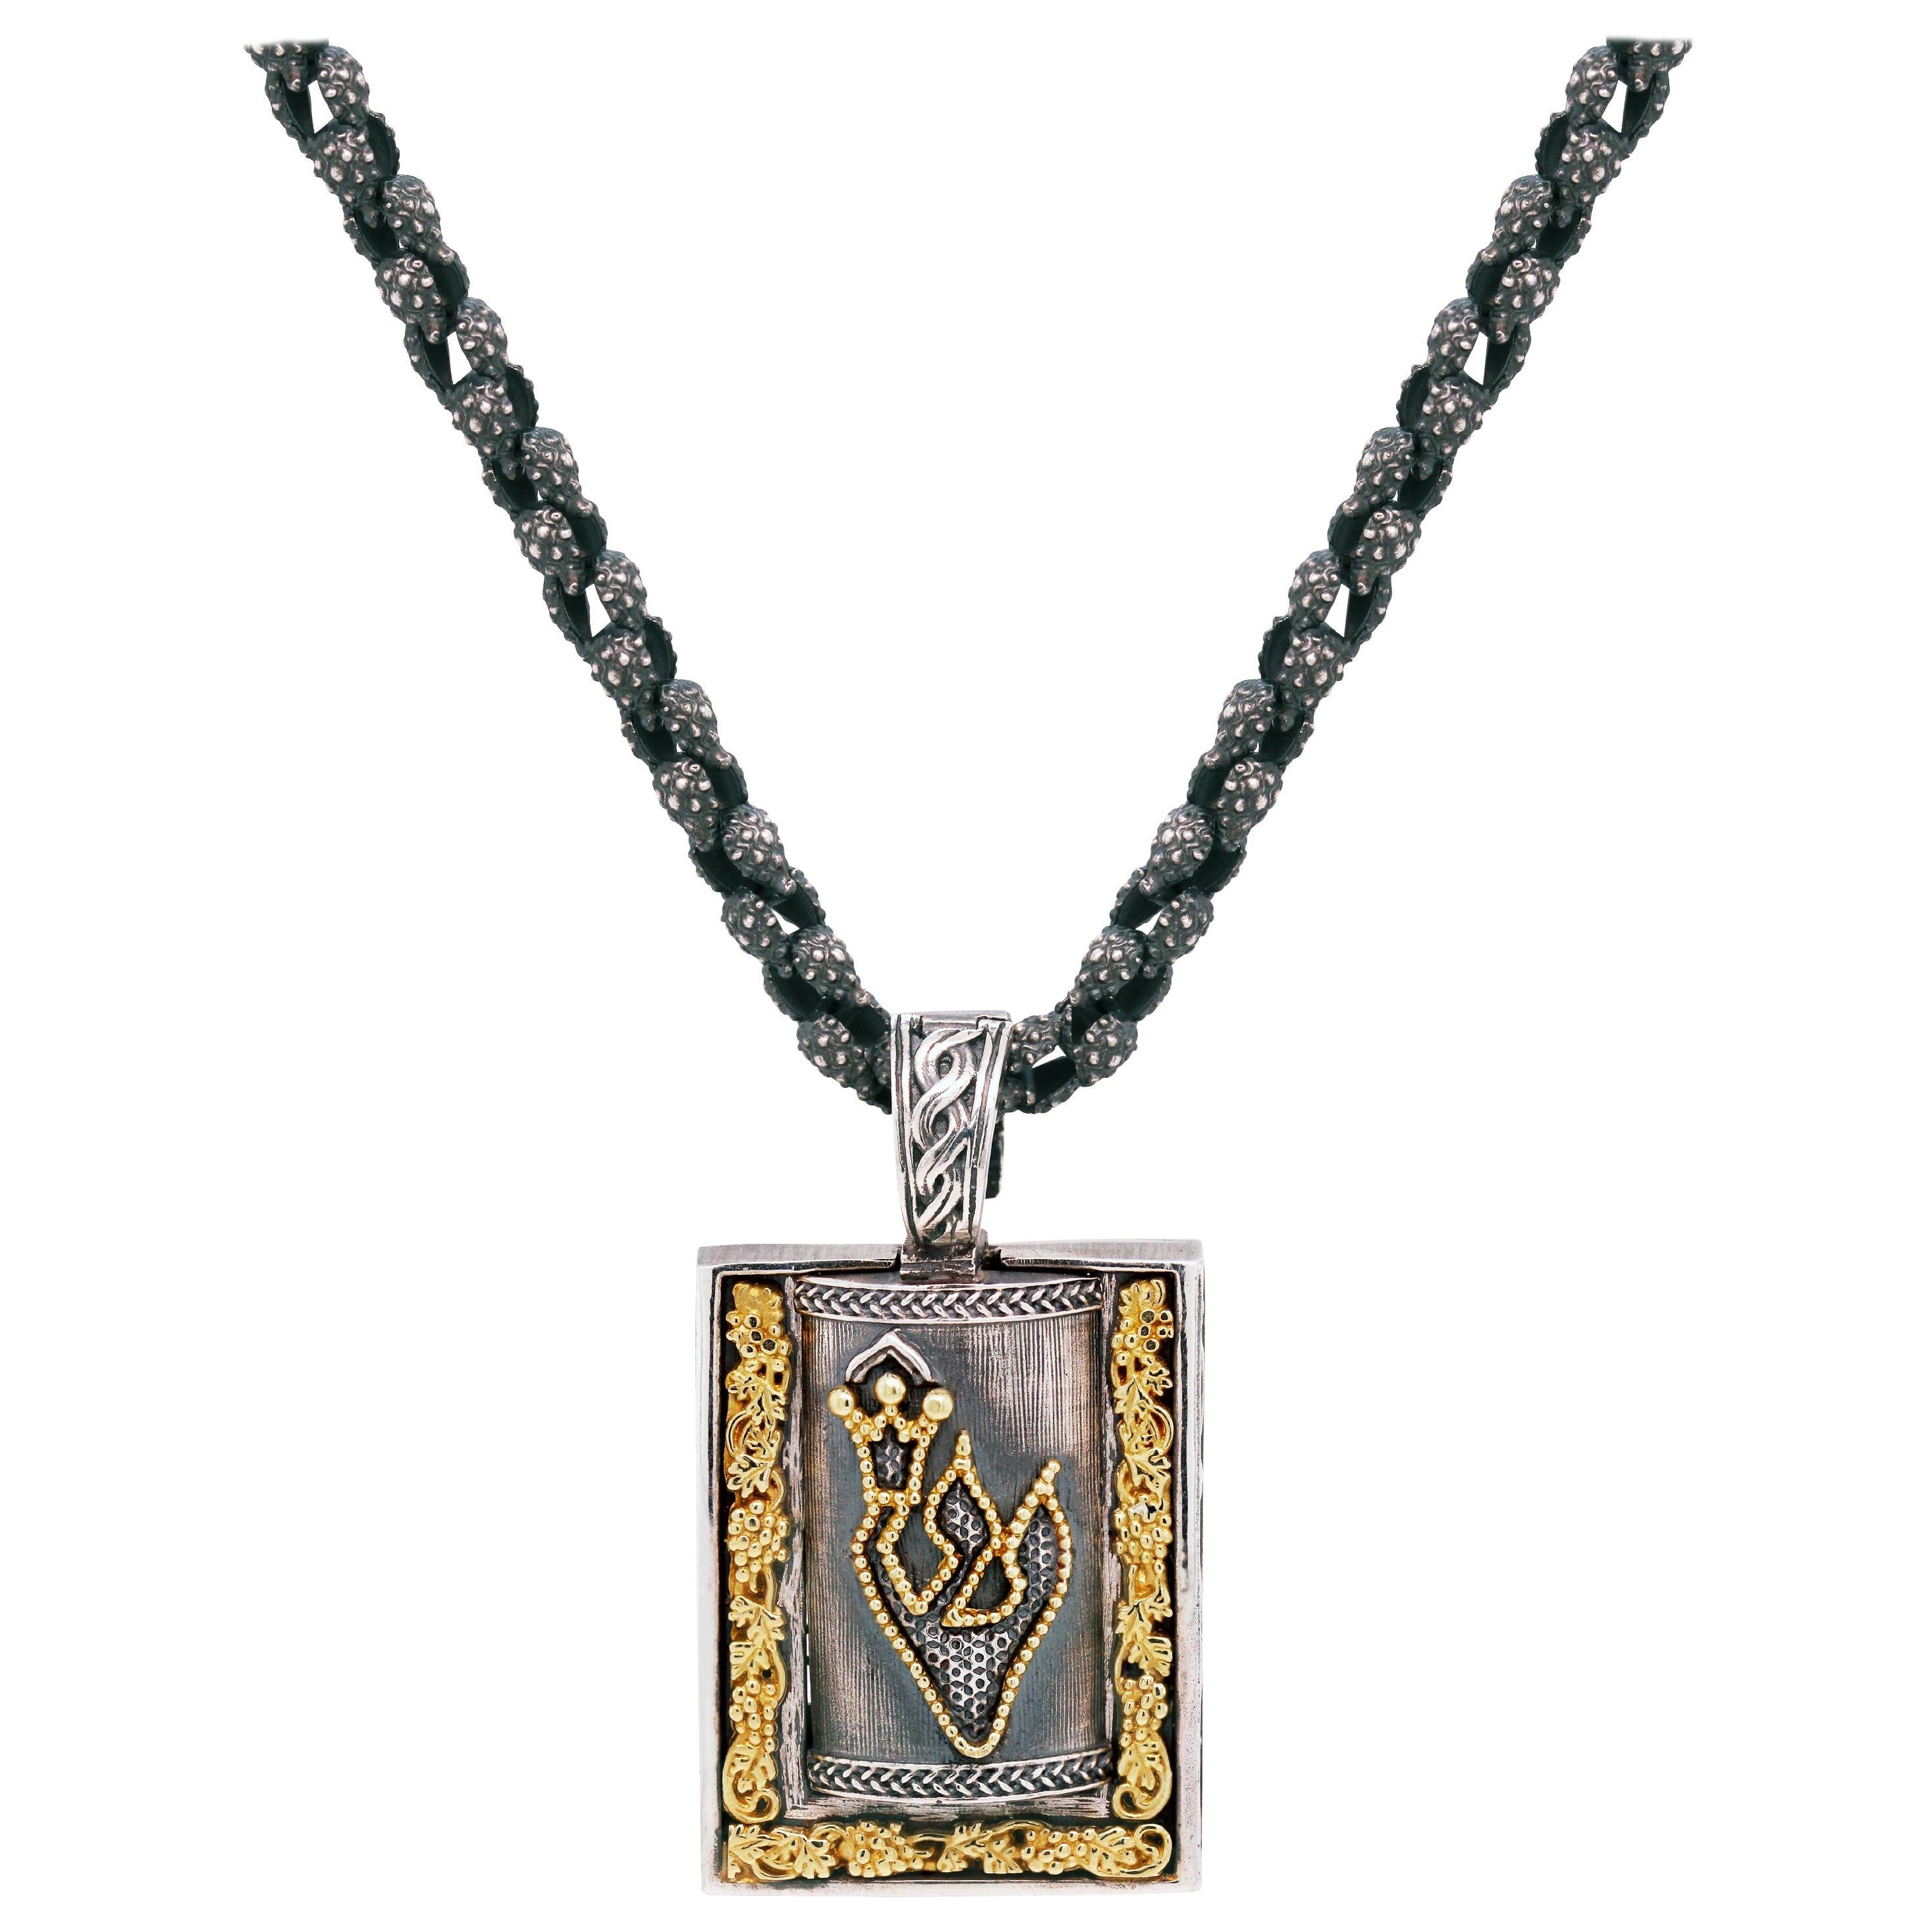 Stambolian Collier pendentif Mezuzah juif en argent vieilli et or 18 carats avec chaîne